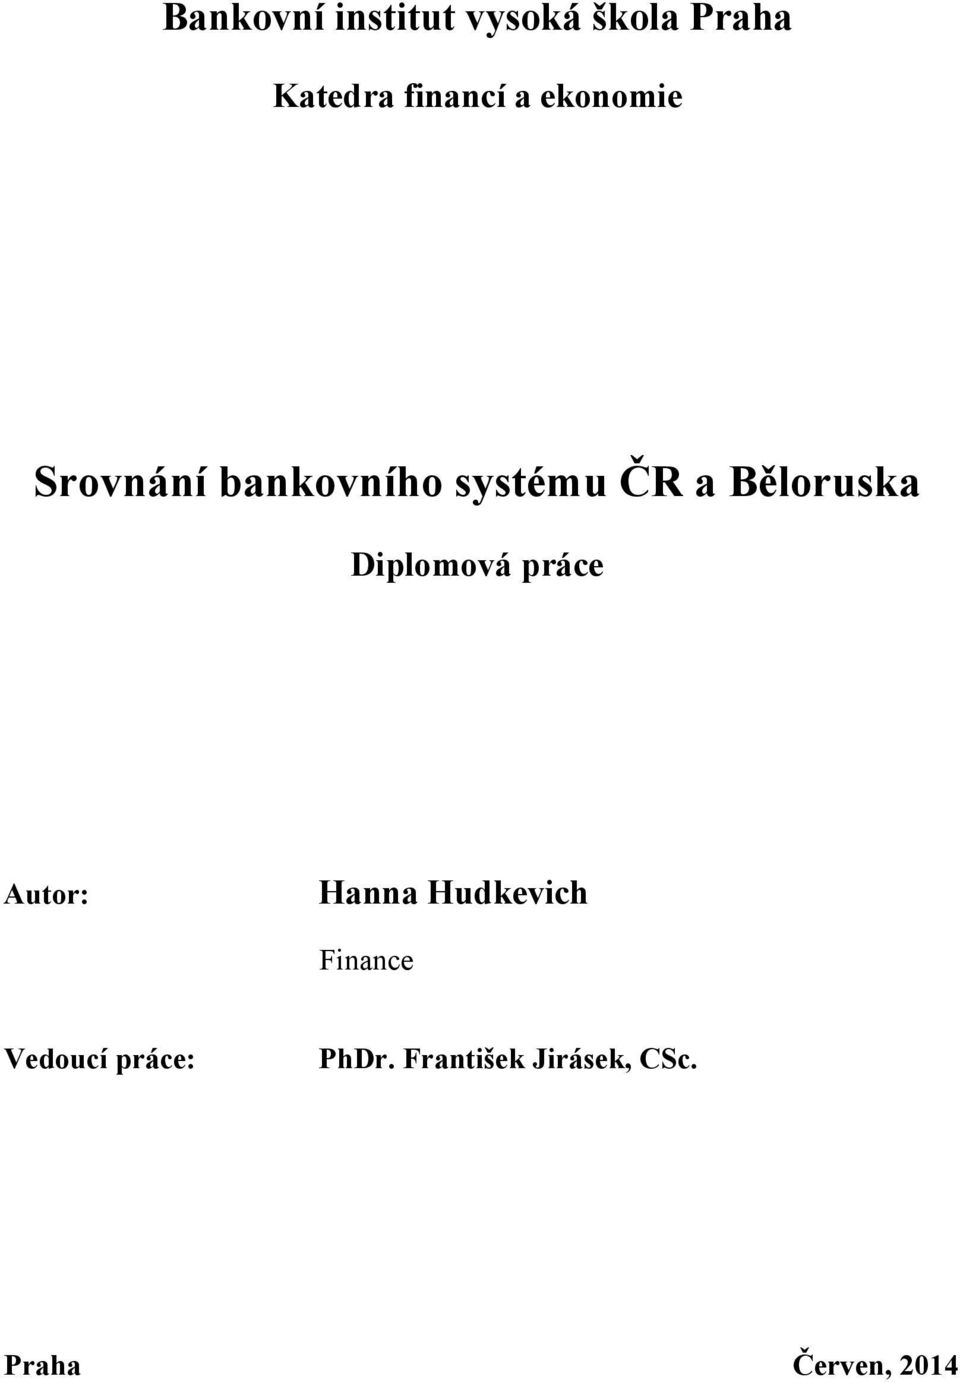 Diplomová práce Autor: Hanna Hudkevich Finance Vedoucí